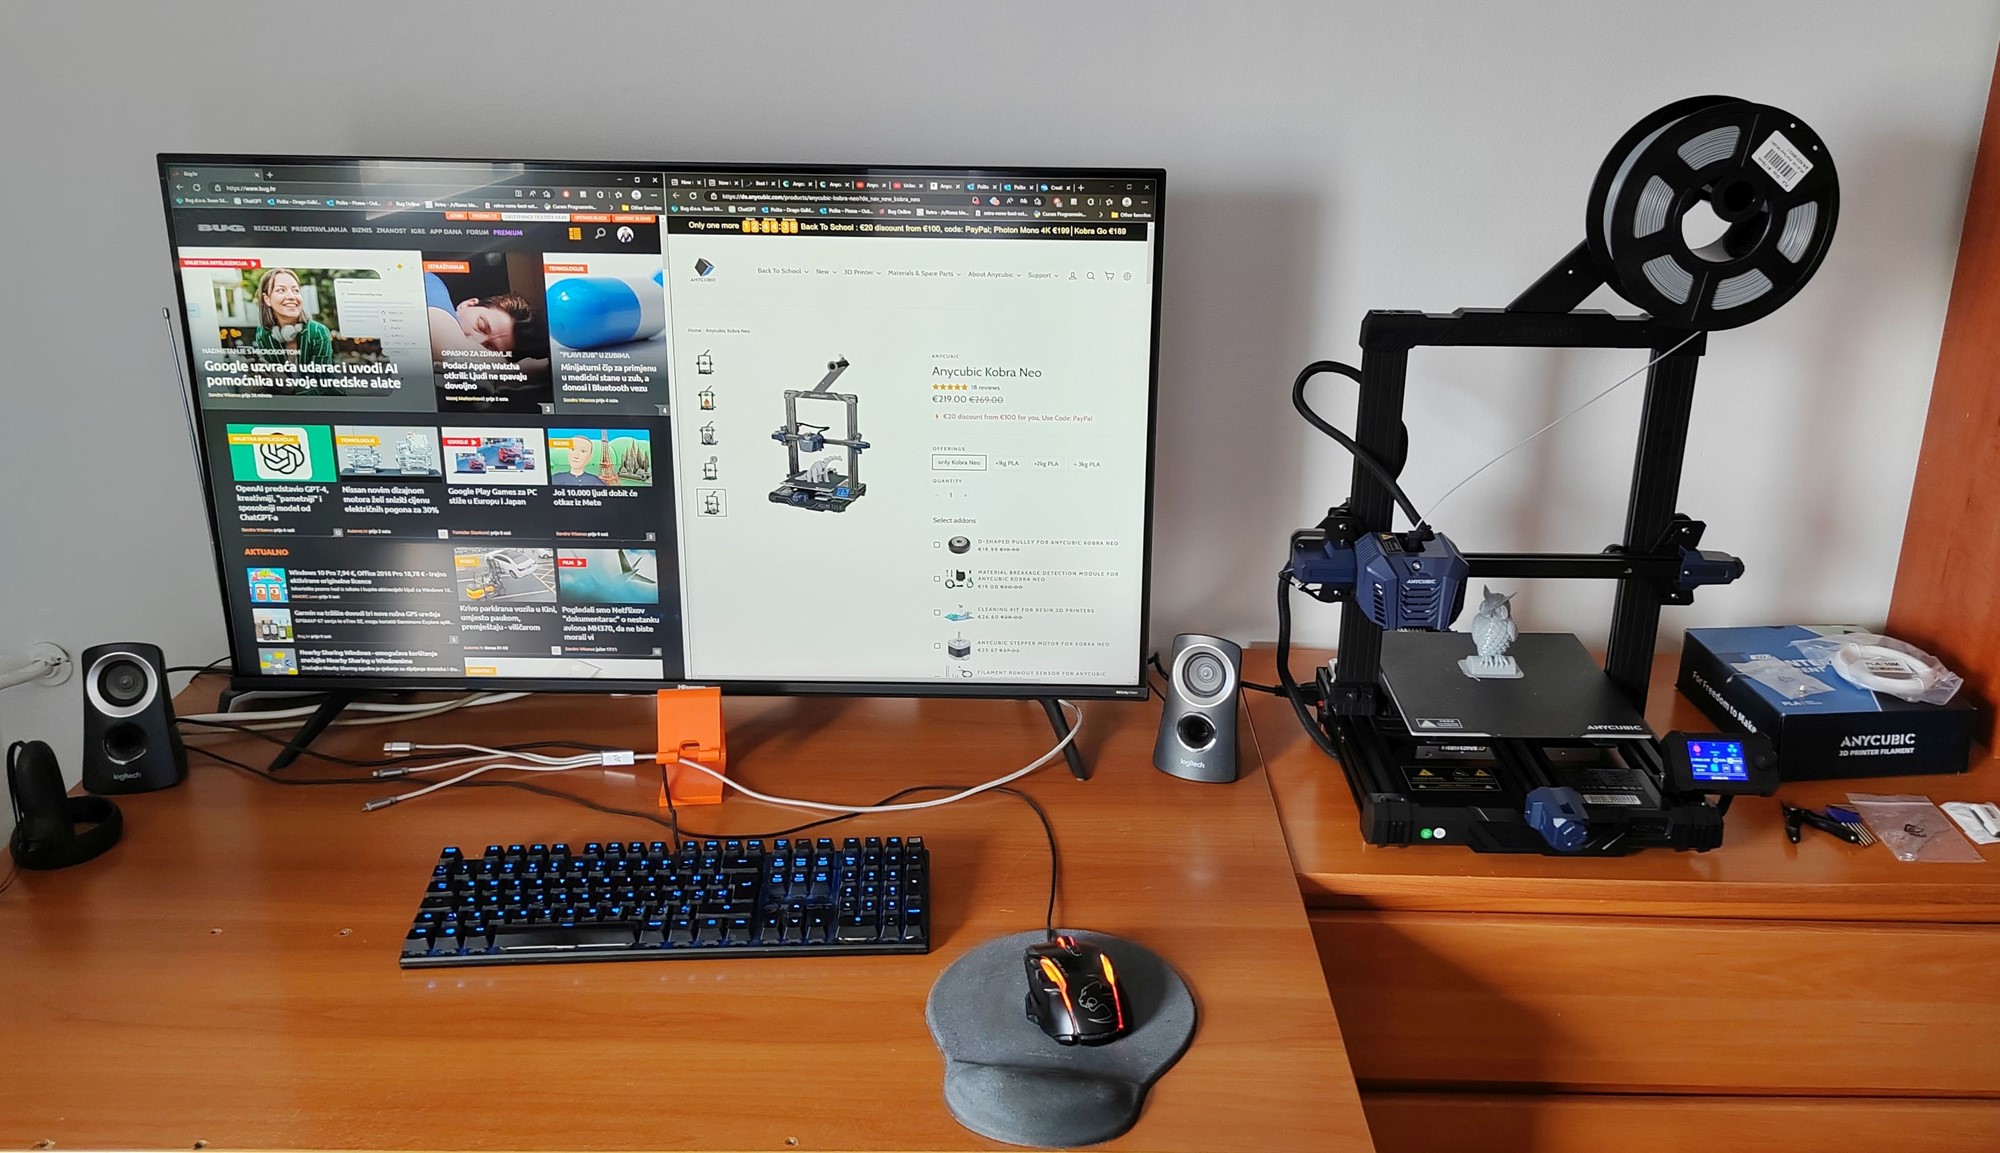 Dimenzije Kobre Neo omogućavaju smještaj na računalni radni stol ili kraj radnog stola